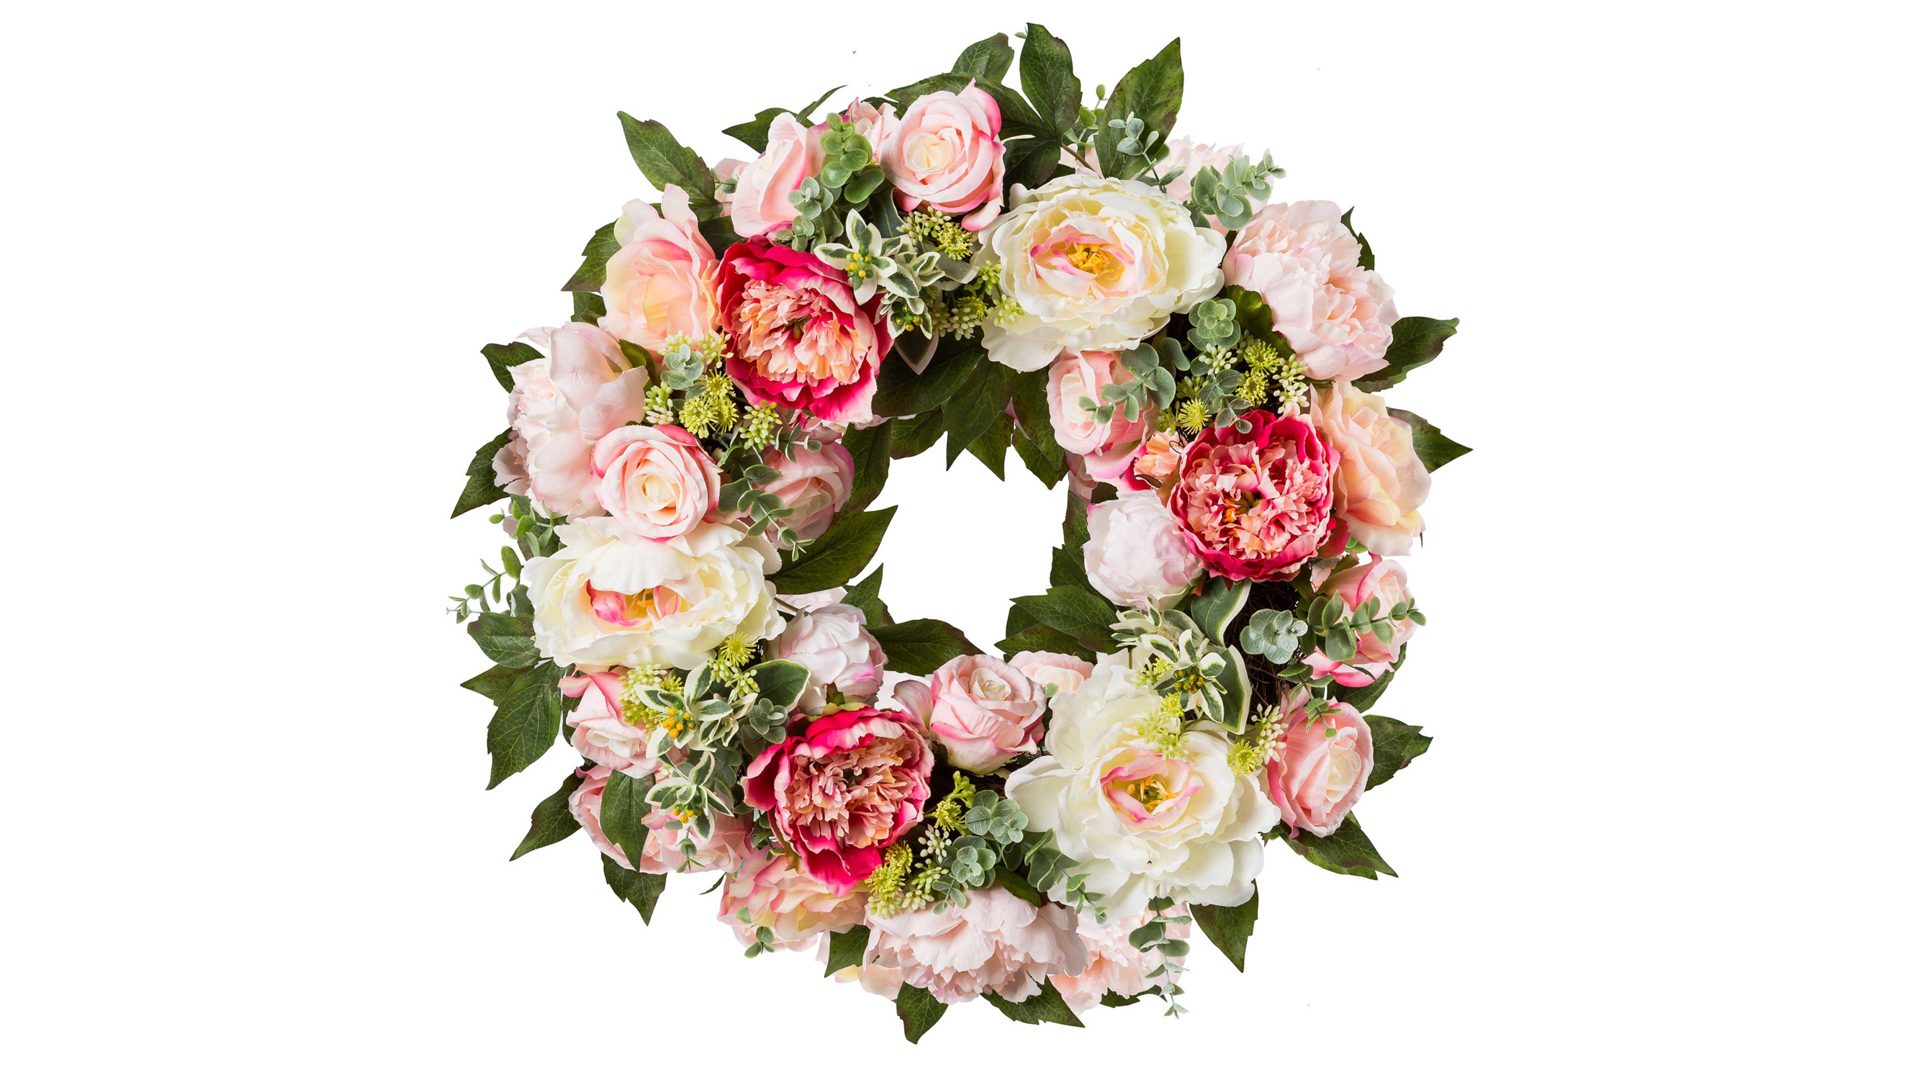 Kranz Gasper gmbh aus Stoff in Pastellfarben Rosen- & Pfingstrosenkranz rosefarbene und weiße Textilblüten – Durchmesser ca. 62 cm